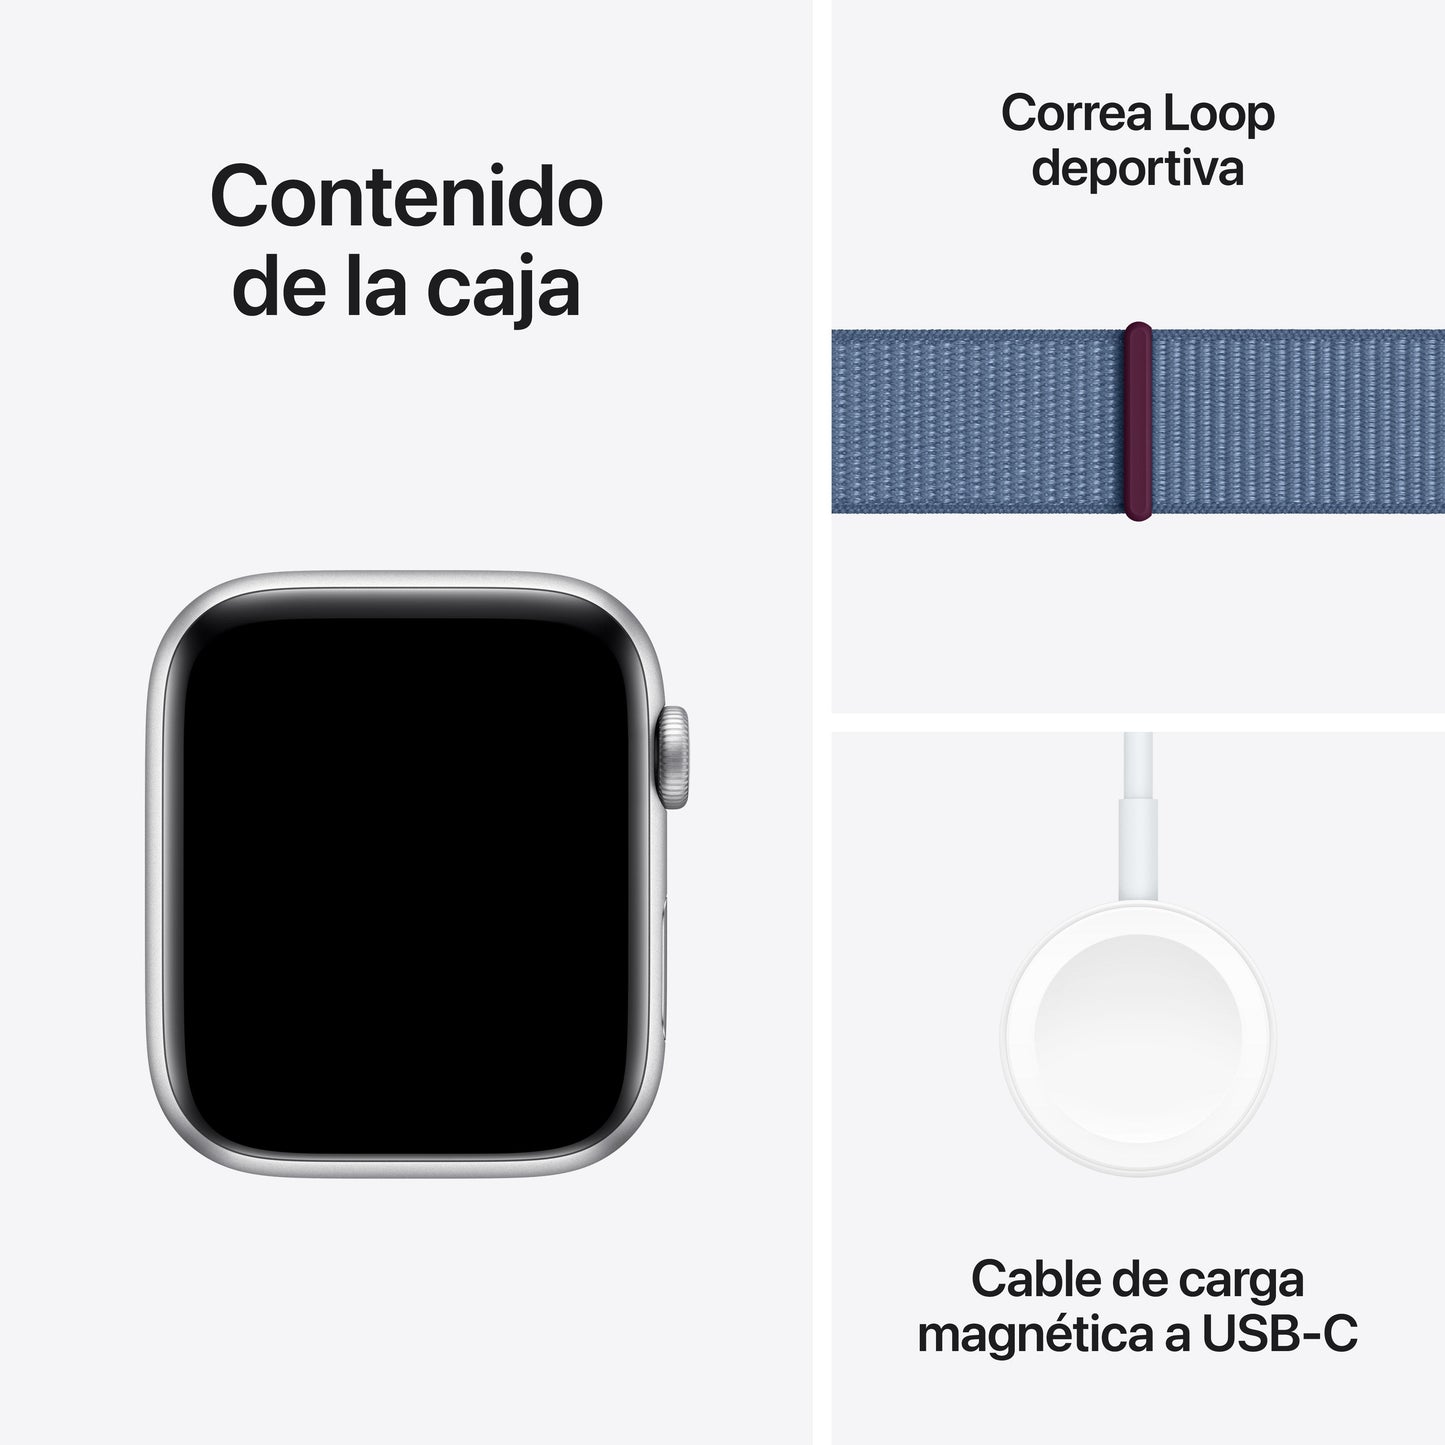 Apple Watch SE (GPS + Cellular) - Caja de aluminio en plata de 44 mm - Correa Loop deportiva azul invierno